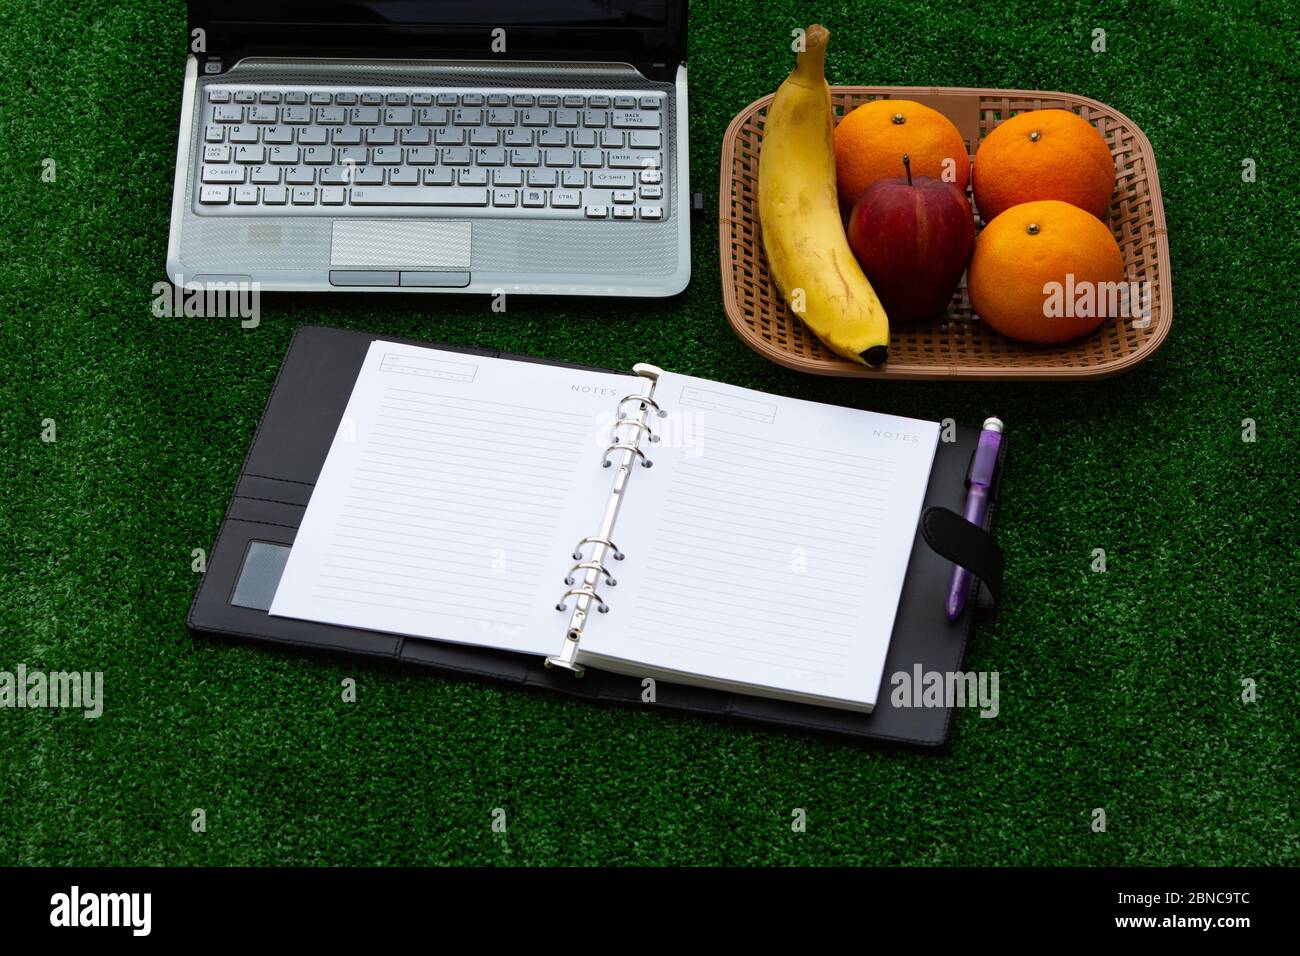 Arbeiten von zu Hause Konzept während der Virusverbreitung, zeigen flexible Arbeitszeiten mit Laptop, Buch und Obst auf Gras Hintergrund. Stockfoto